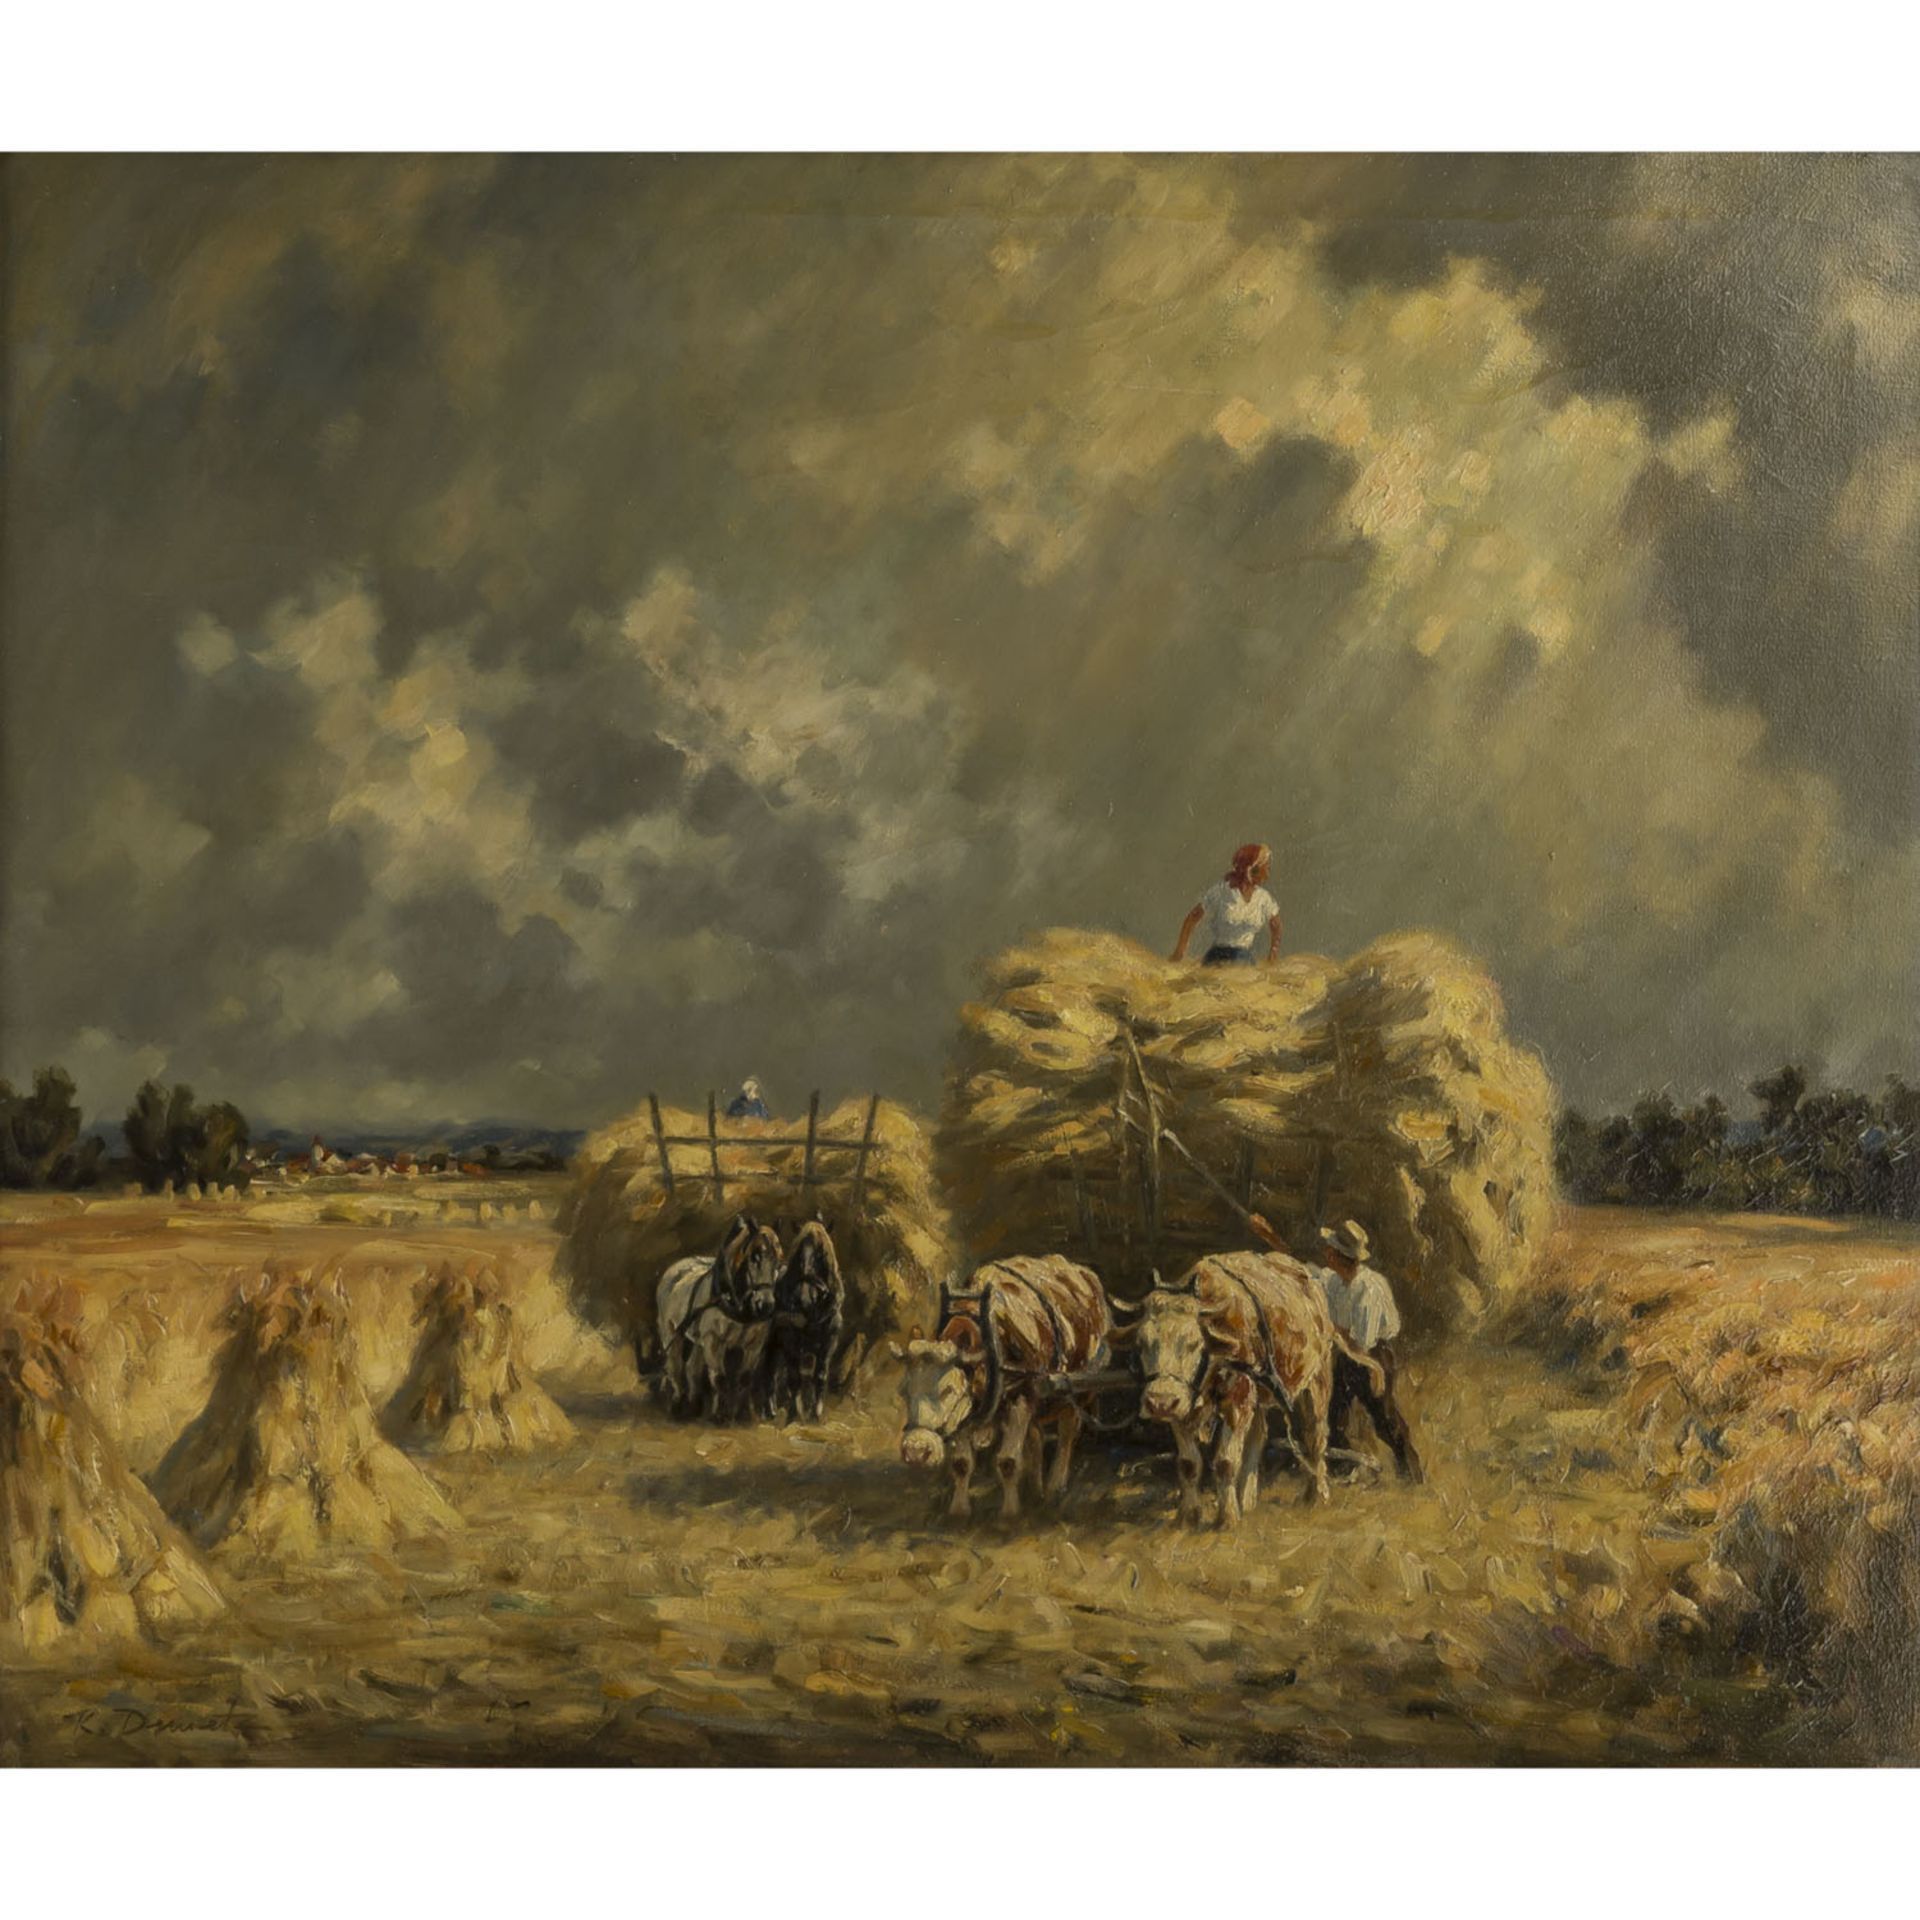 DEMETZ, KARL (Trossingen 1909-1986 Apfelstedten), "Heuernte auf der Baarebene",Bauern beim Beladen